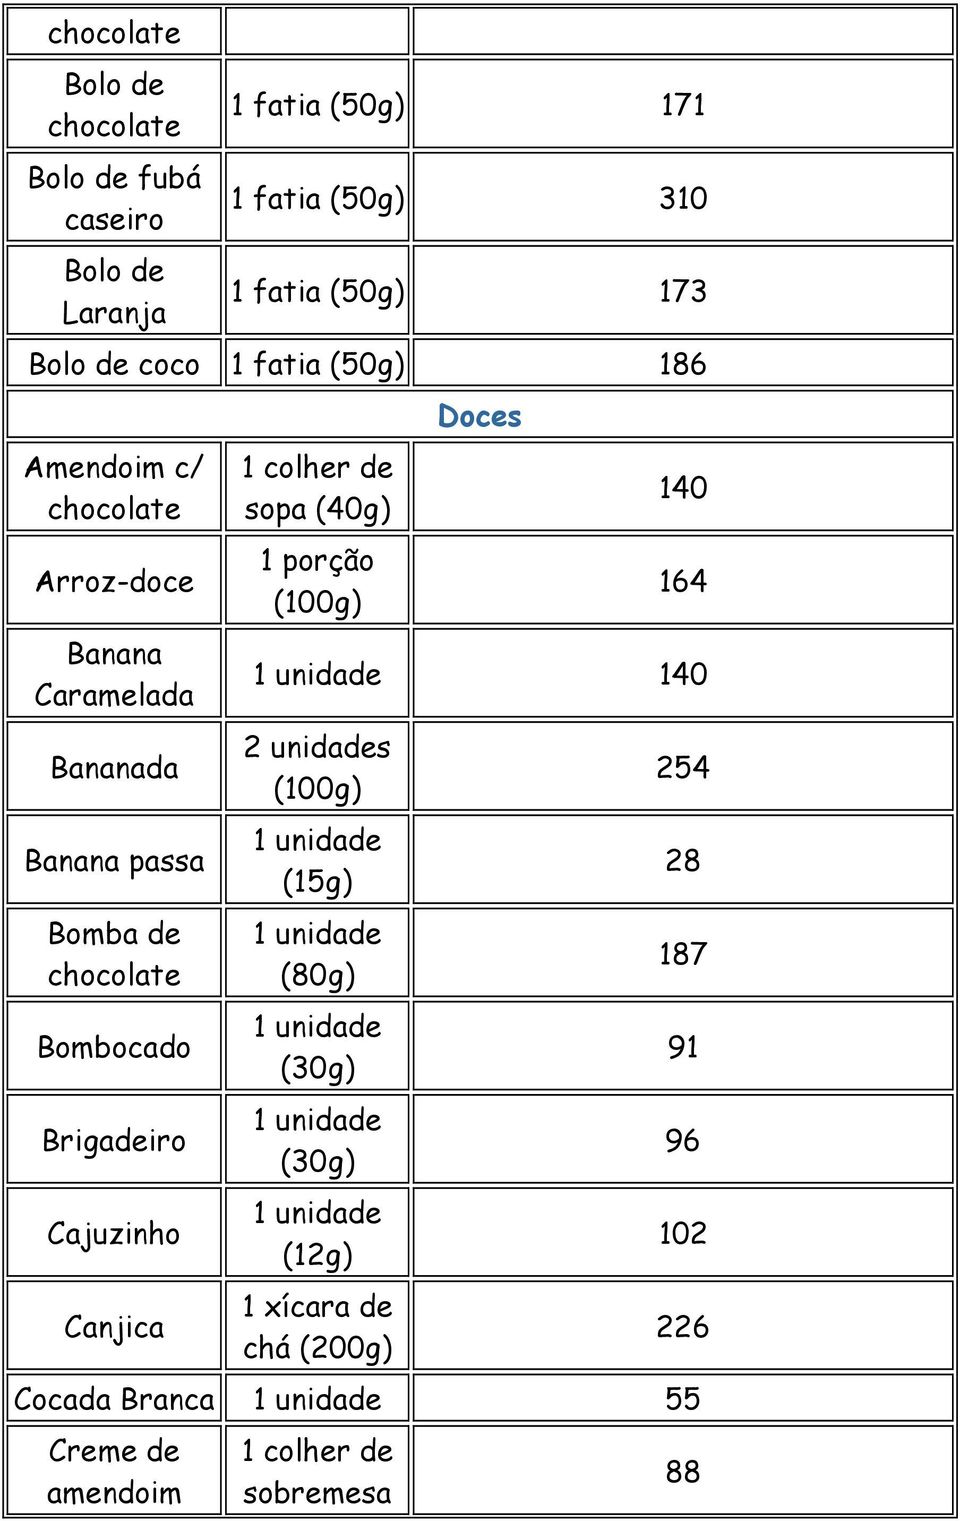 chocolate Bombocado Brigadeiro Cajuzinho Canjica sopa (40g) Doces 140 164 140 2 unidades (15g) (80g)